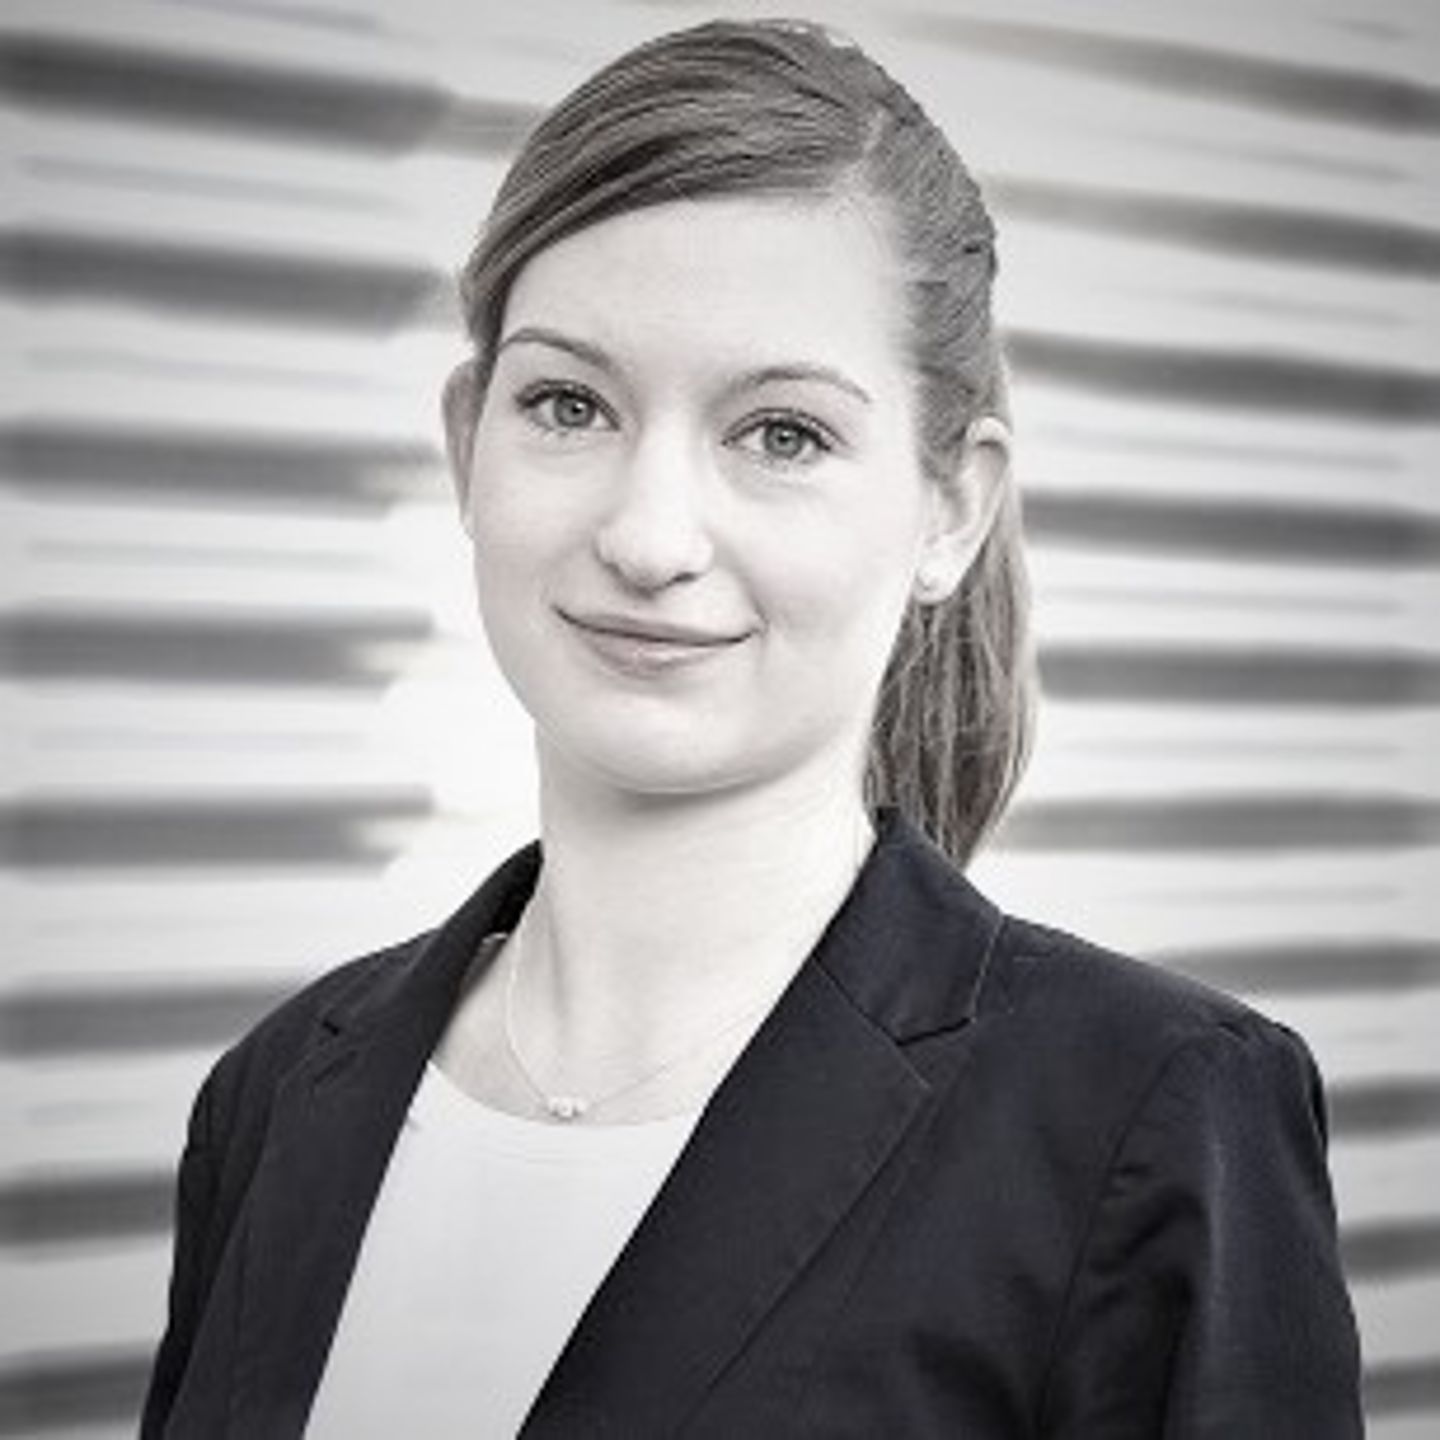 Portret van de expert Anja Koerber, Head of Artificial Intelligence & Automation van de Otto-Groep, met een vlecht en blazer.